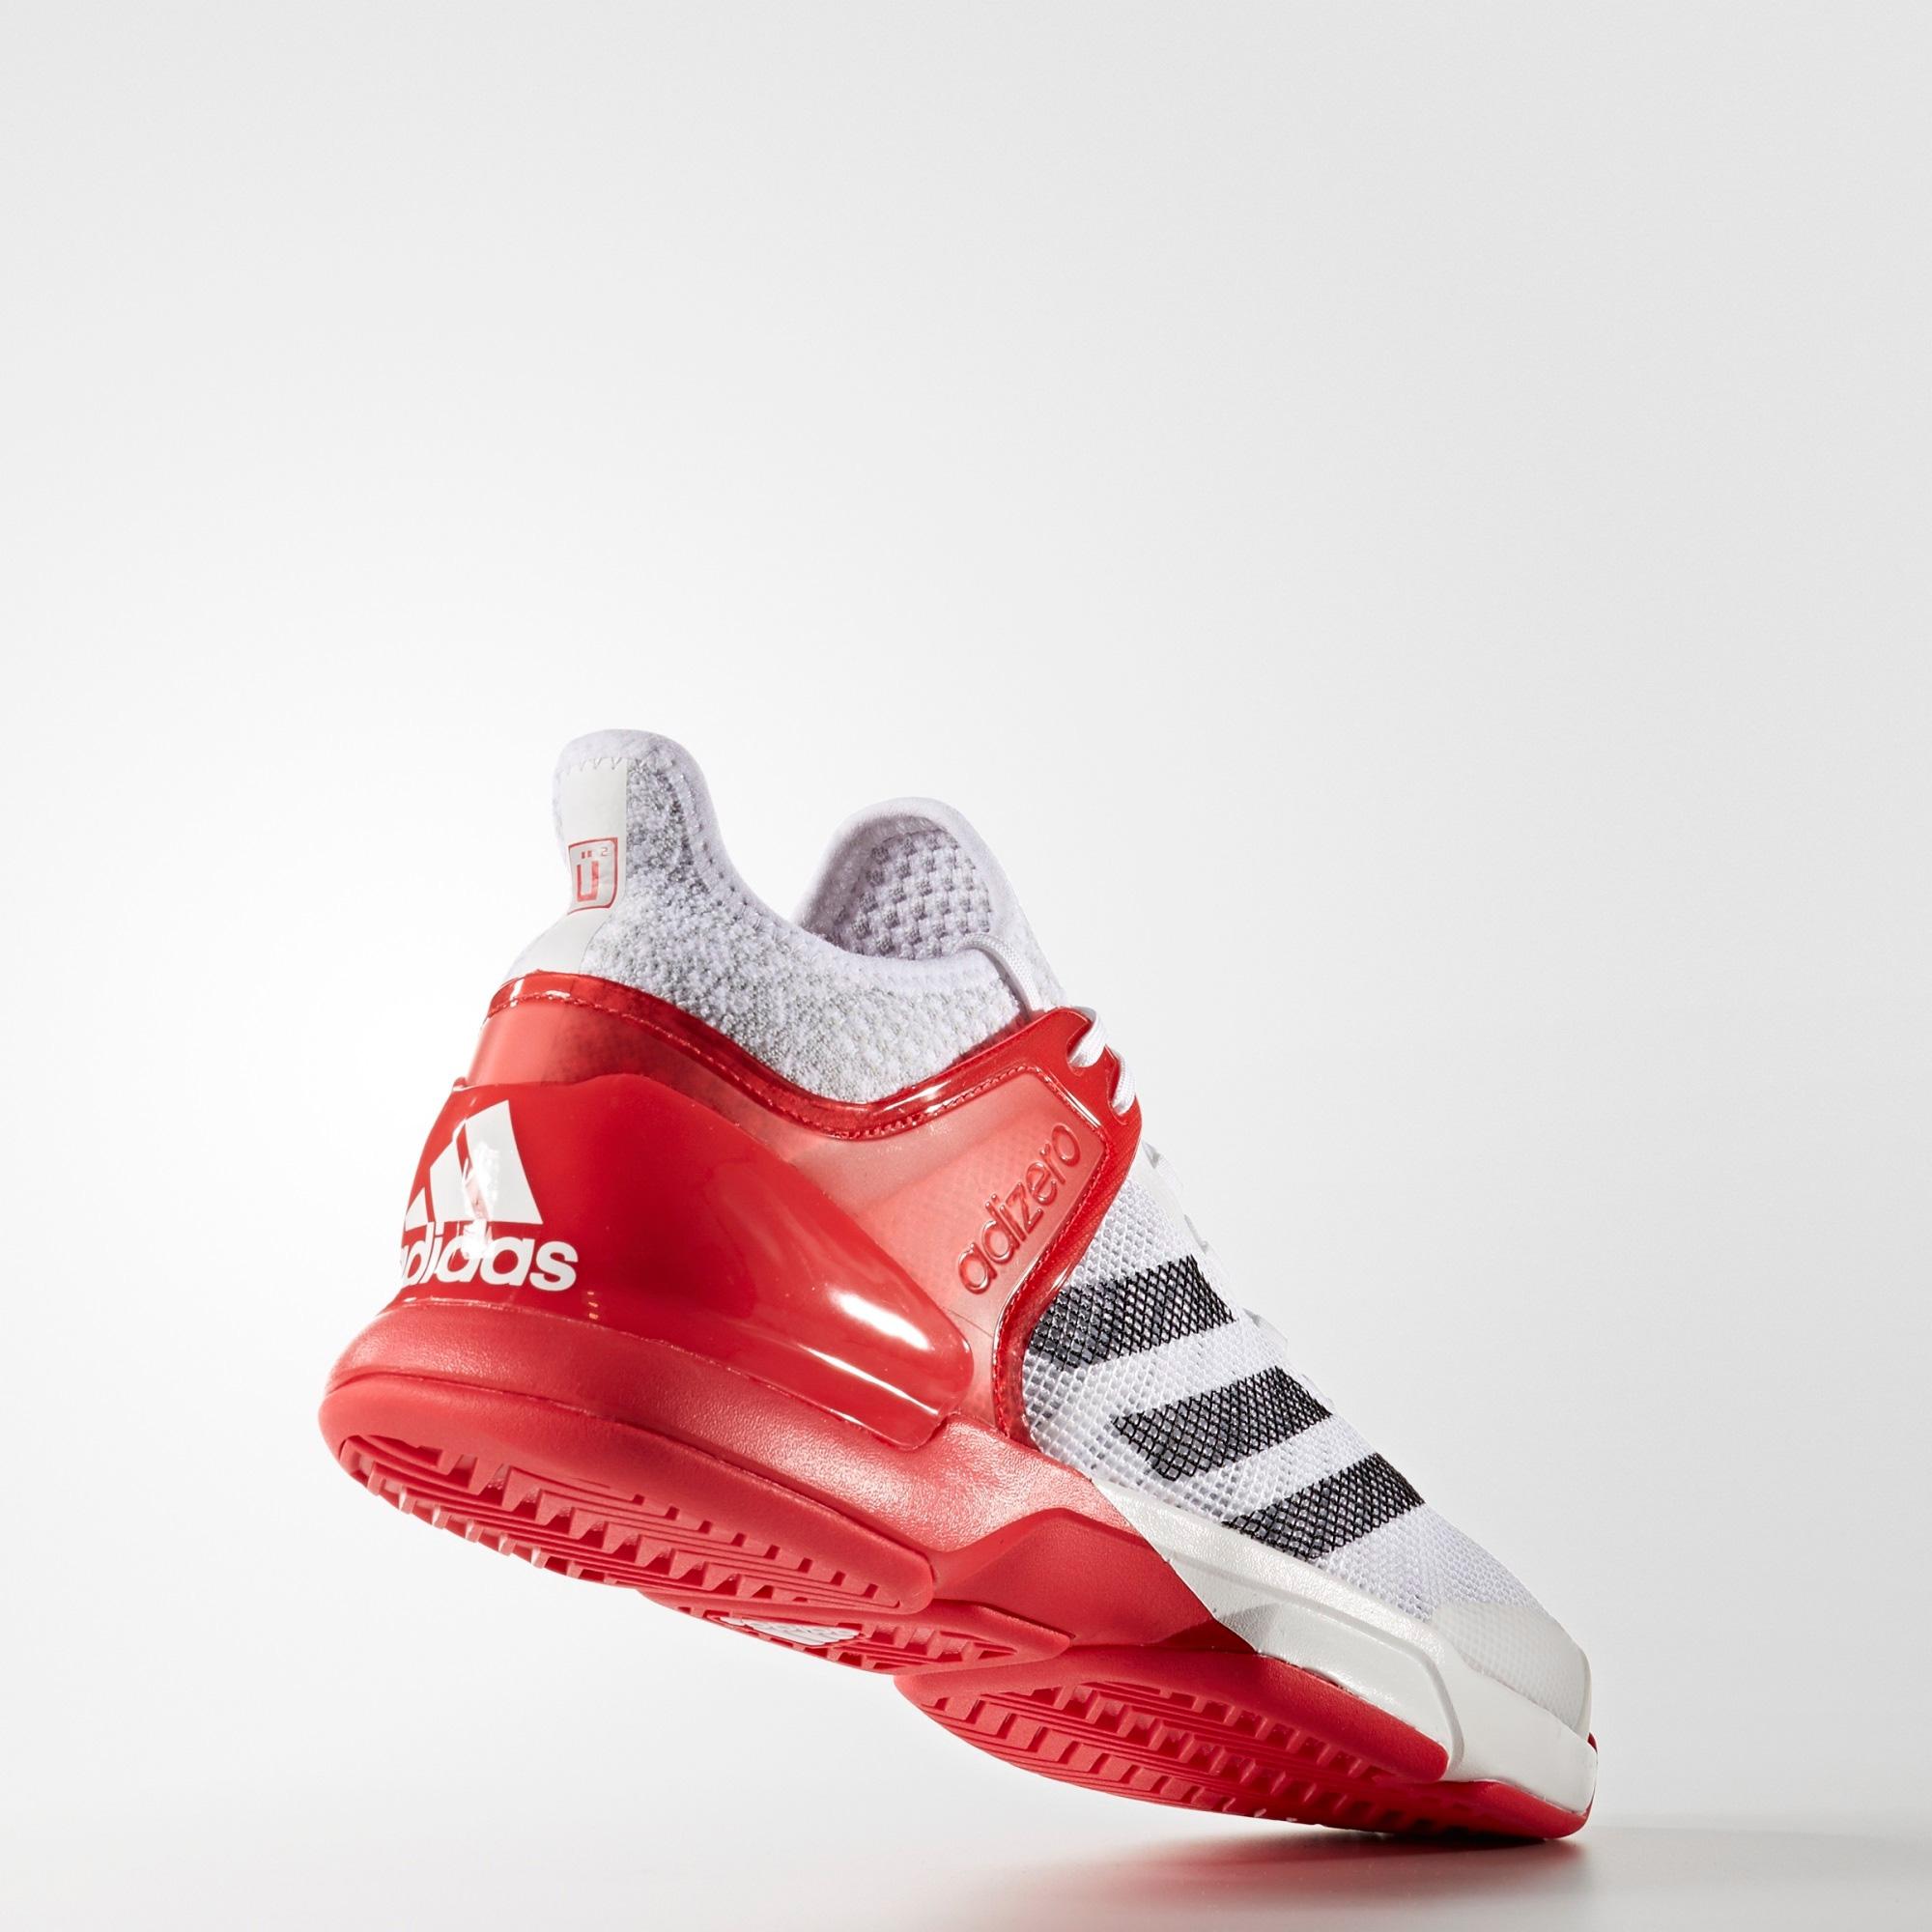 Adidas Mens Adizero Ubersonic 2.0 Tennis Shoes - White/Red - Tennisnuts.com